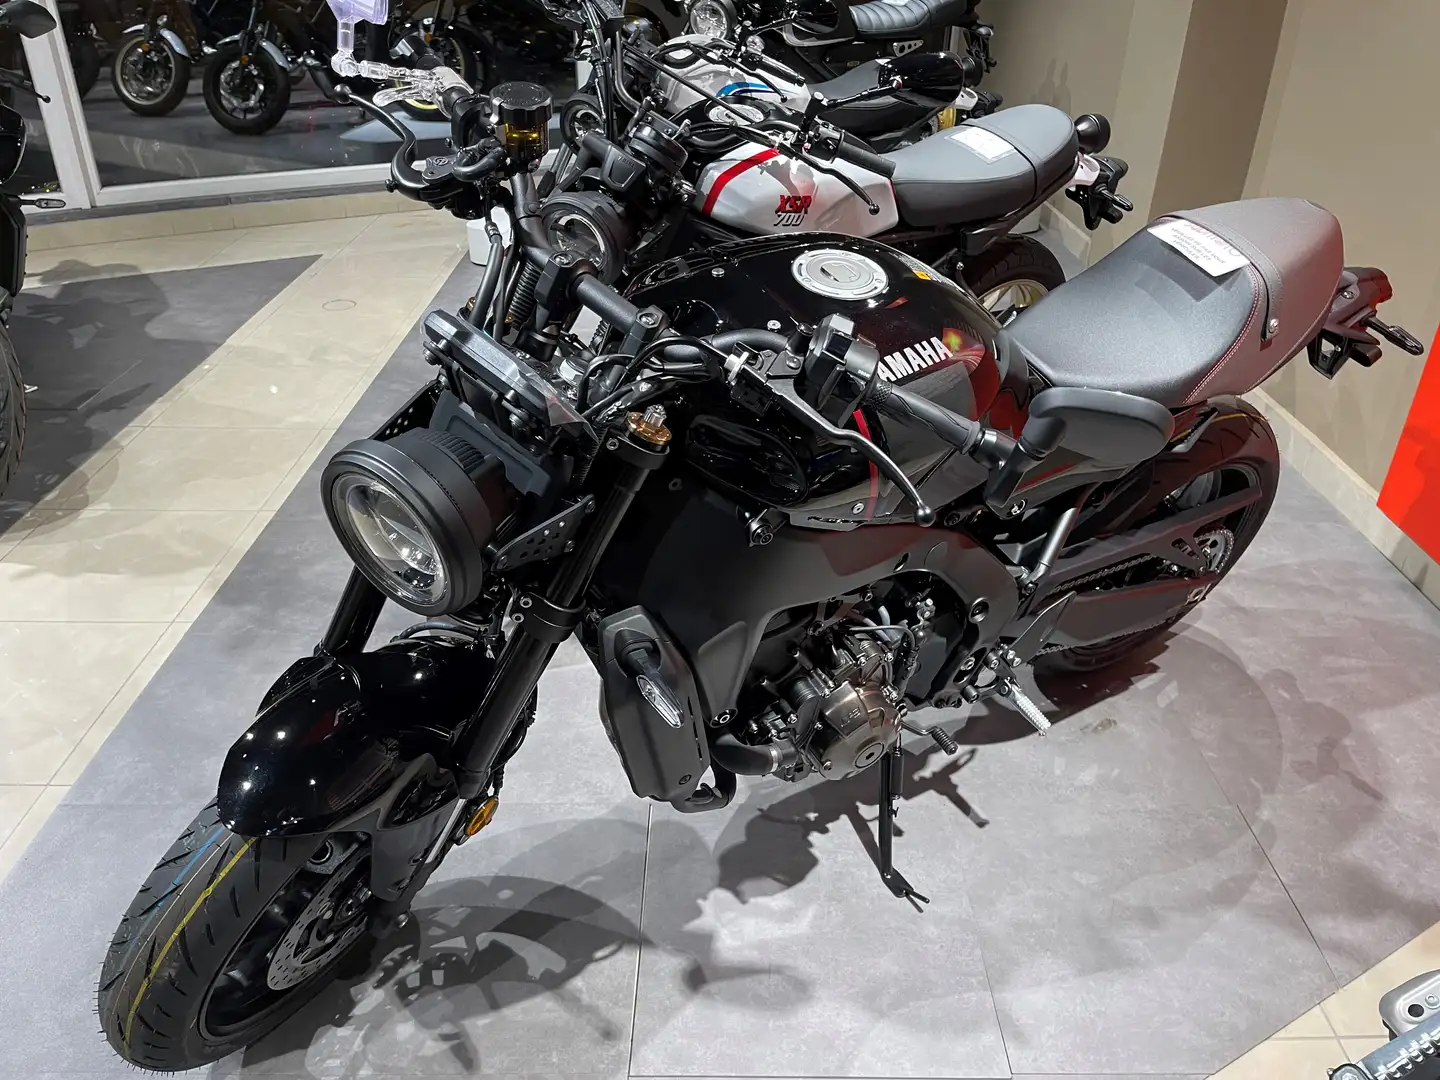 Yamaha XSR 900 Neuve - Disponible dans tous les coloris crna - 2